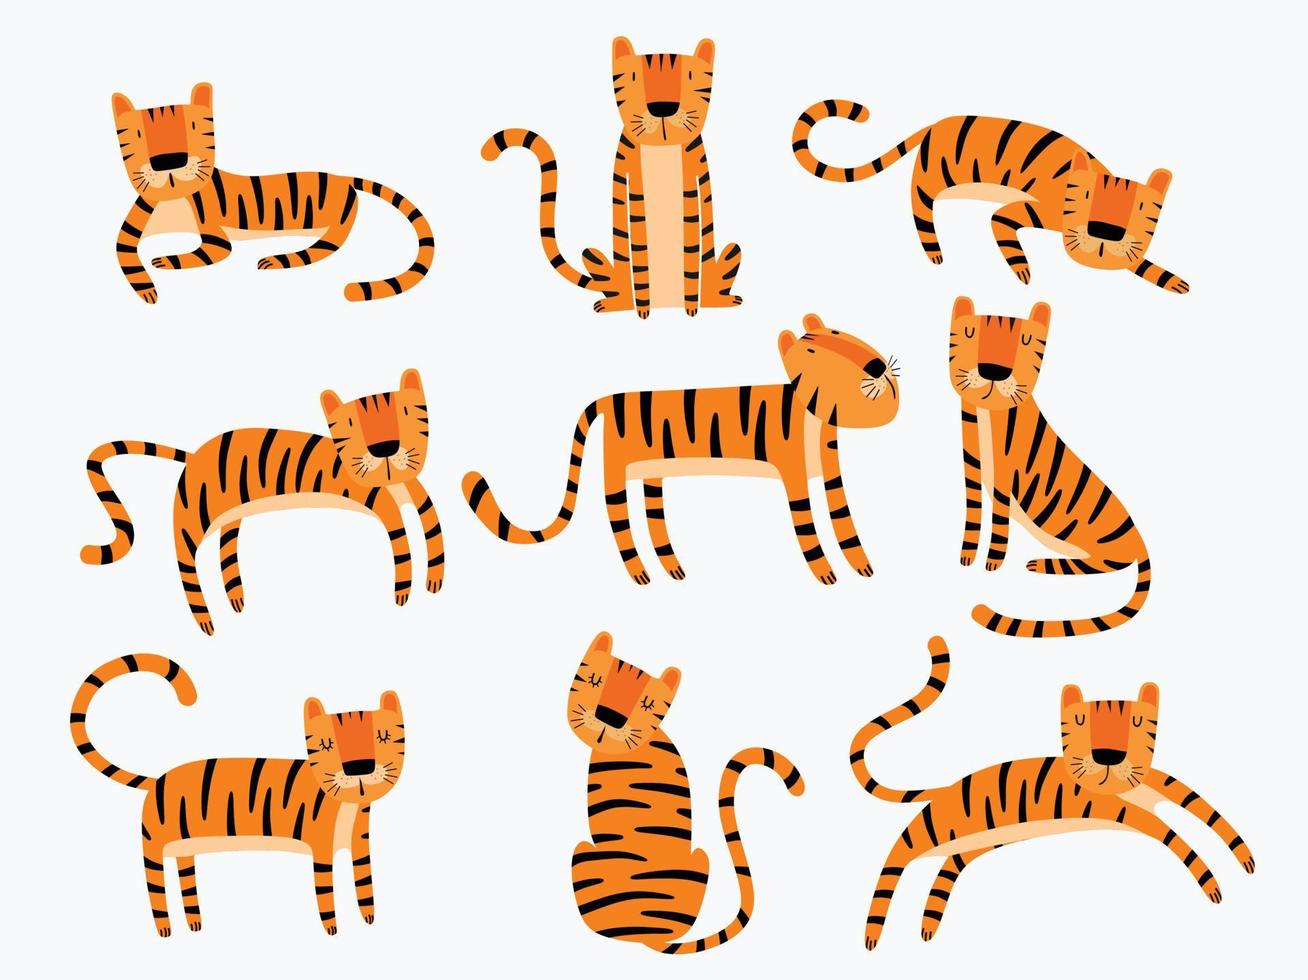 söt tiger karaktär i olika poser isolerad på en vit bakgrund. vektor